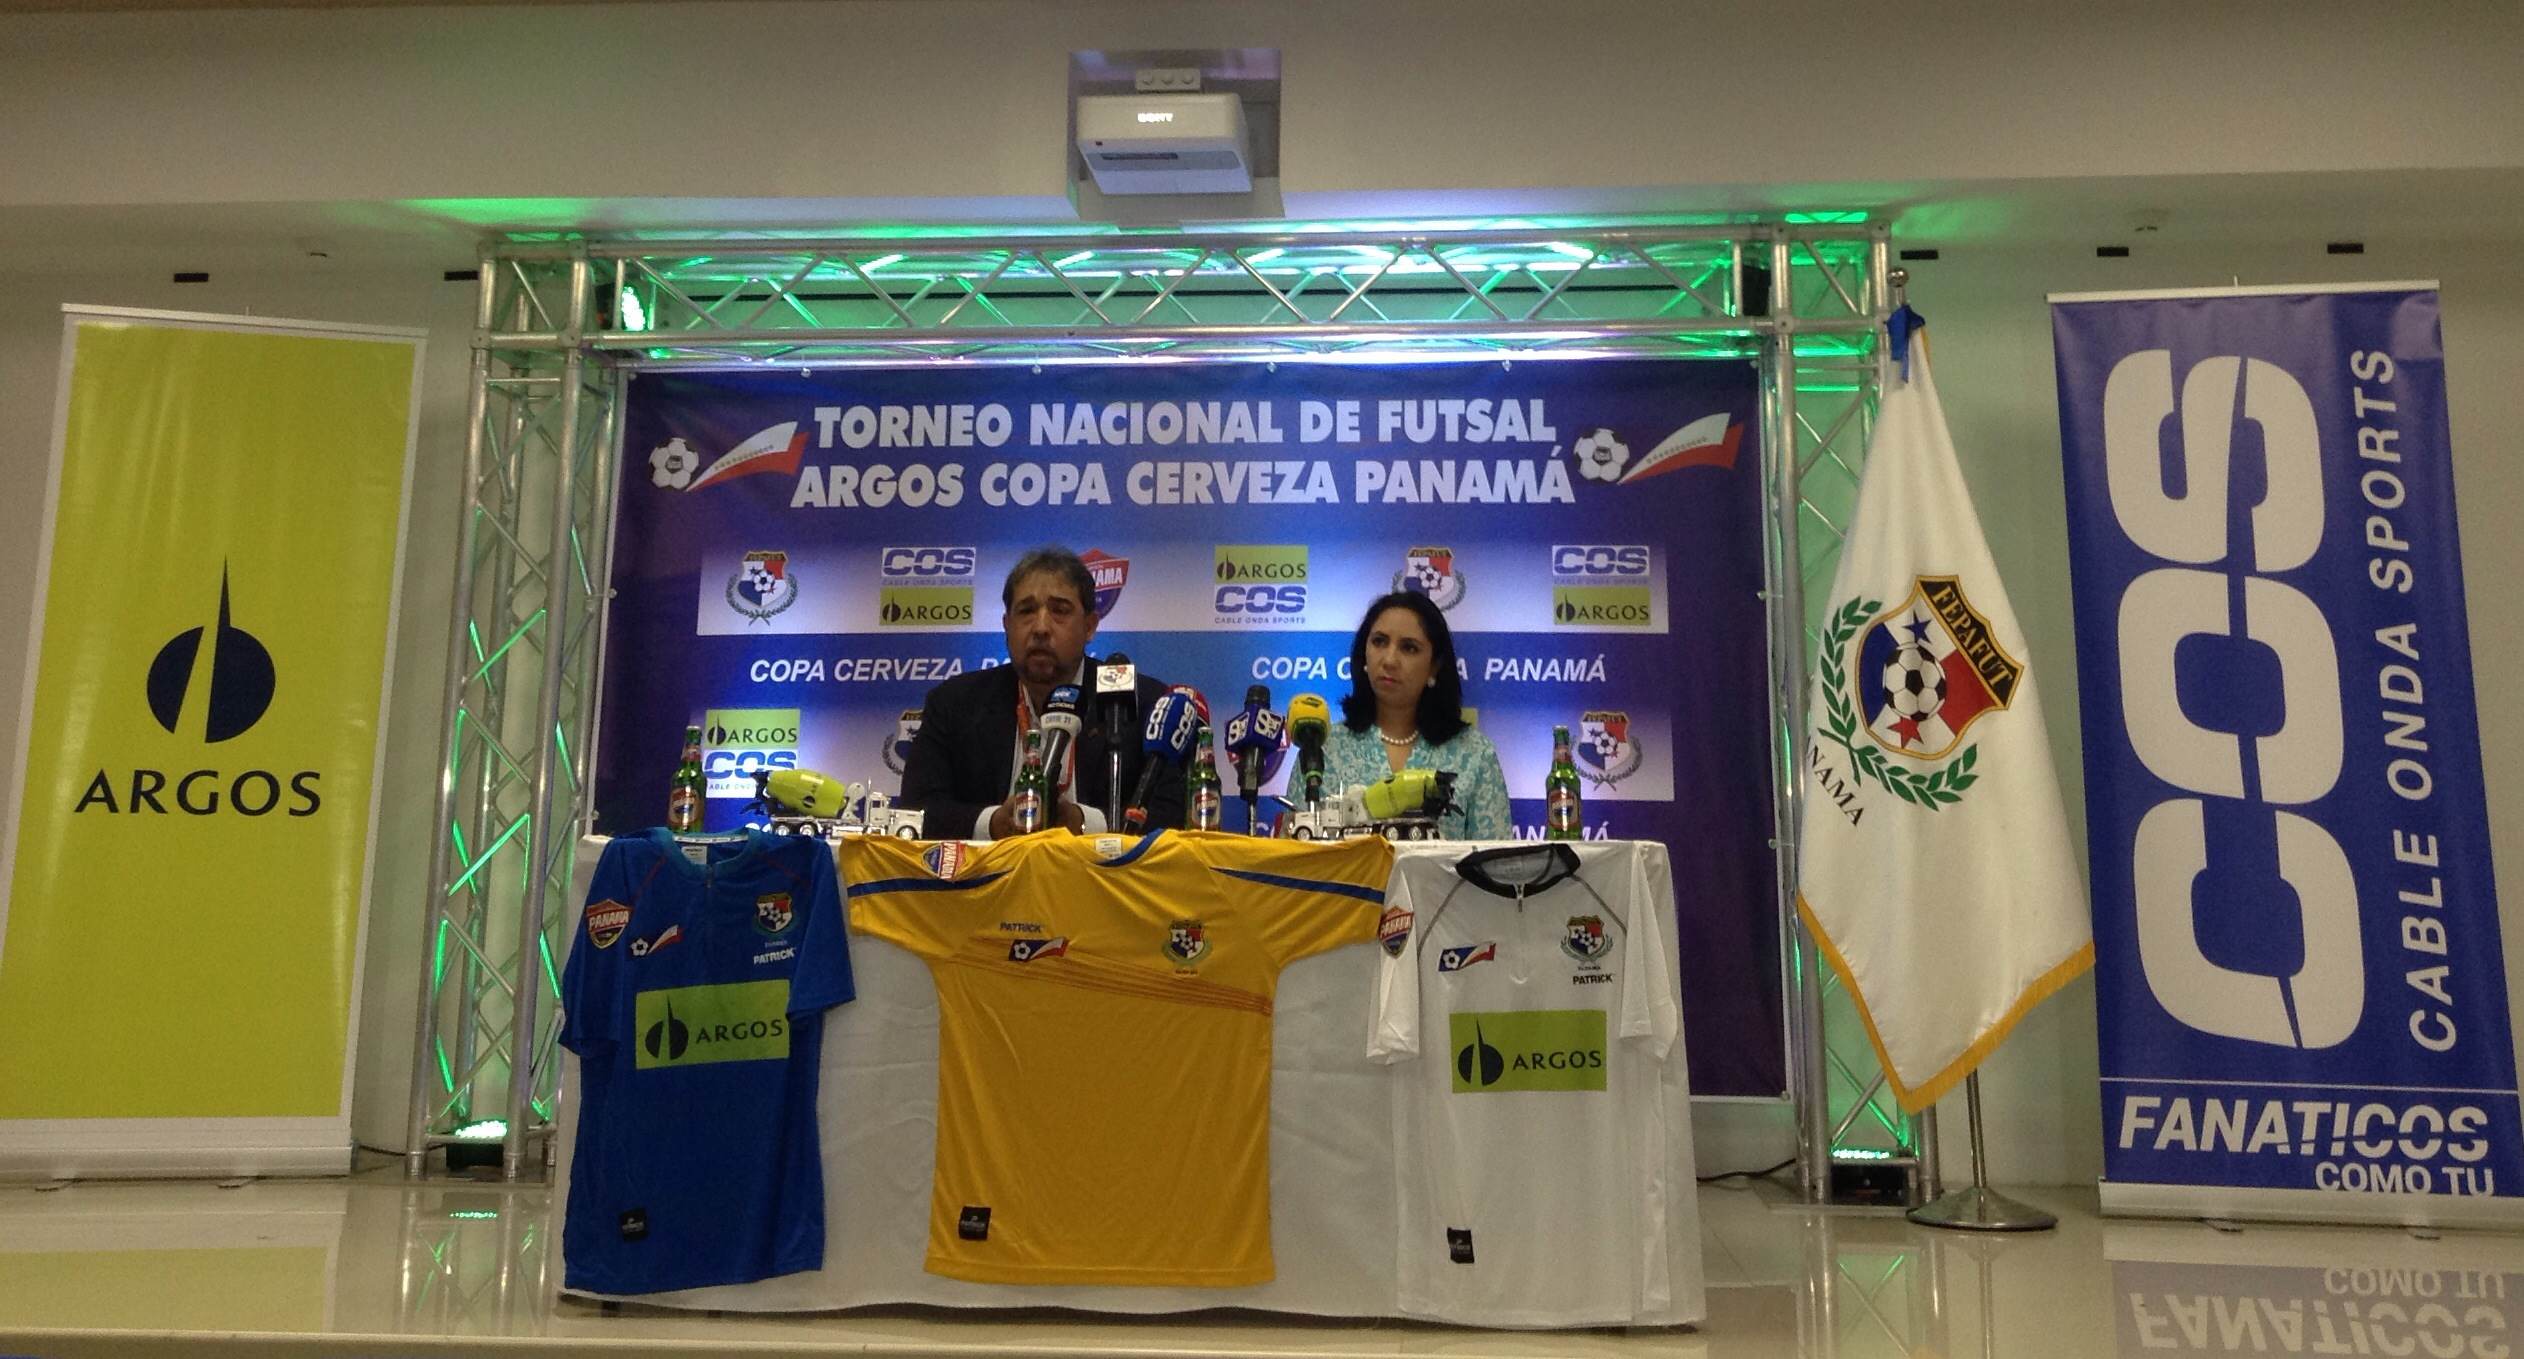 Todos los detalles en torno al Torneo Nacional de Futsal Argos Copa Cerveza Panamá